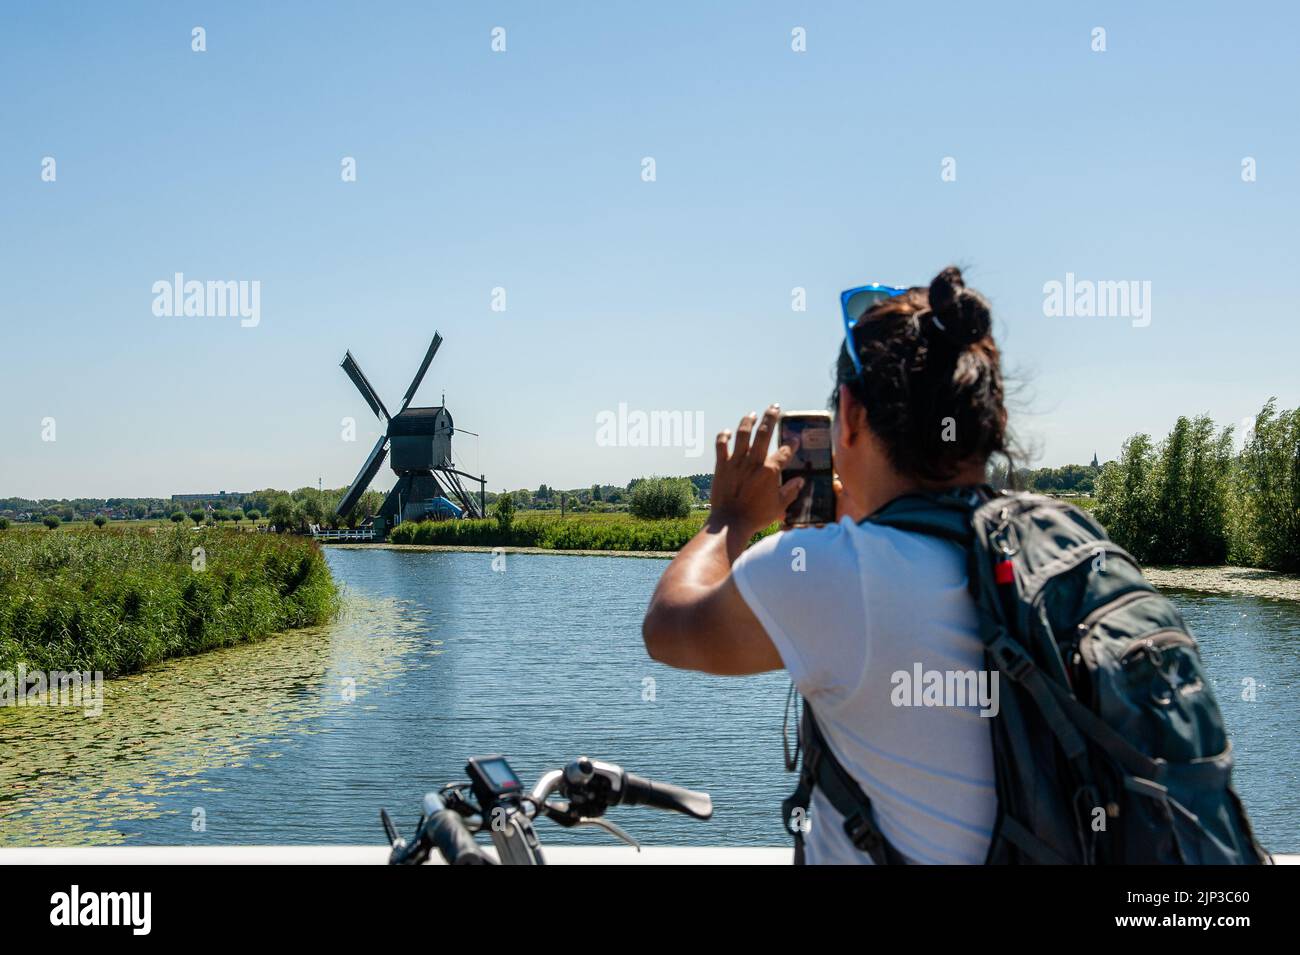 Kinderdijk, pays-Bas. 13th août 2022. On voit un homme prendre une photo avec son téléphone portable de l'un des moulins à vent. Dans la belle région riche en eau près de Dordrecht, vous trouverez les moulins à vent de Kinderdijk. Construits vers 1740, ces 19 magnifiques moulins à vent font partie d'un plus grand système de gestion de l'eau pour éviter les inondations. Aujourd'hui, ils symbolisent la gestion de l'eau aux pays-Bas et, en 1997, ils ont été déclarés site du patrimoine mondial de l'UNESCO. Chaque année, des milliers de touristes du monde entier visitent ce lieu emblématique. Crédit : SOPA Images Limited/Alamy Live News Banque D'Images